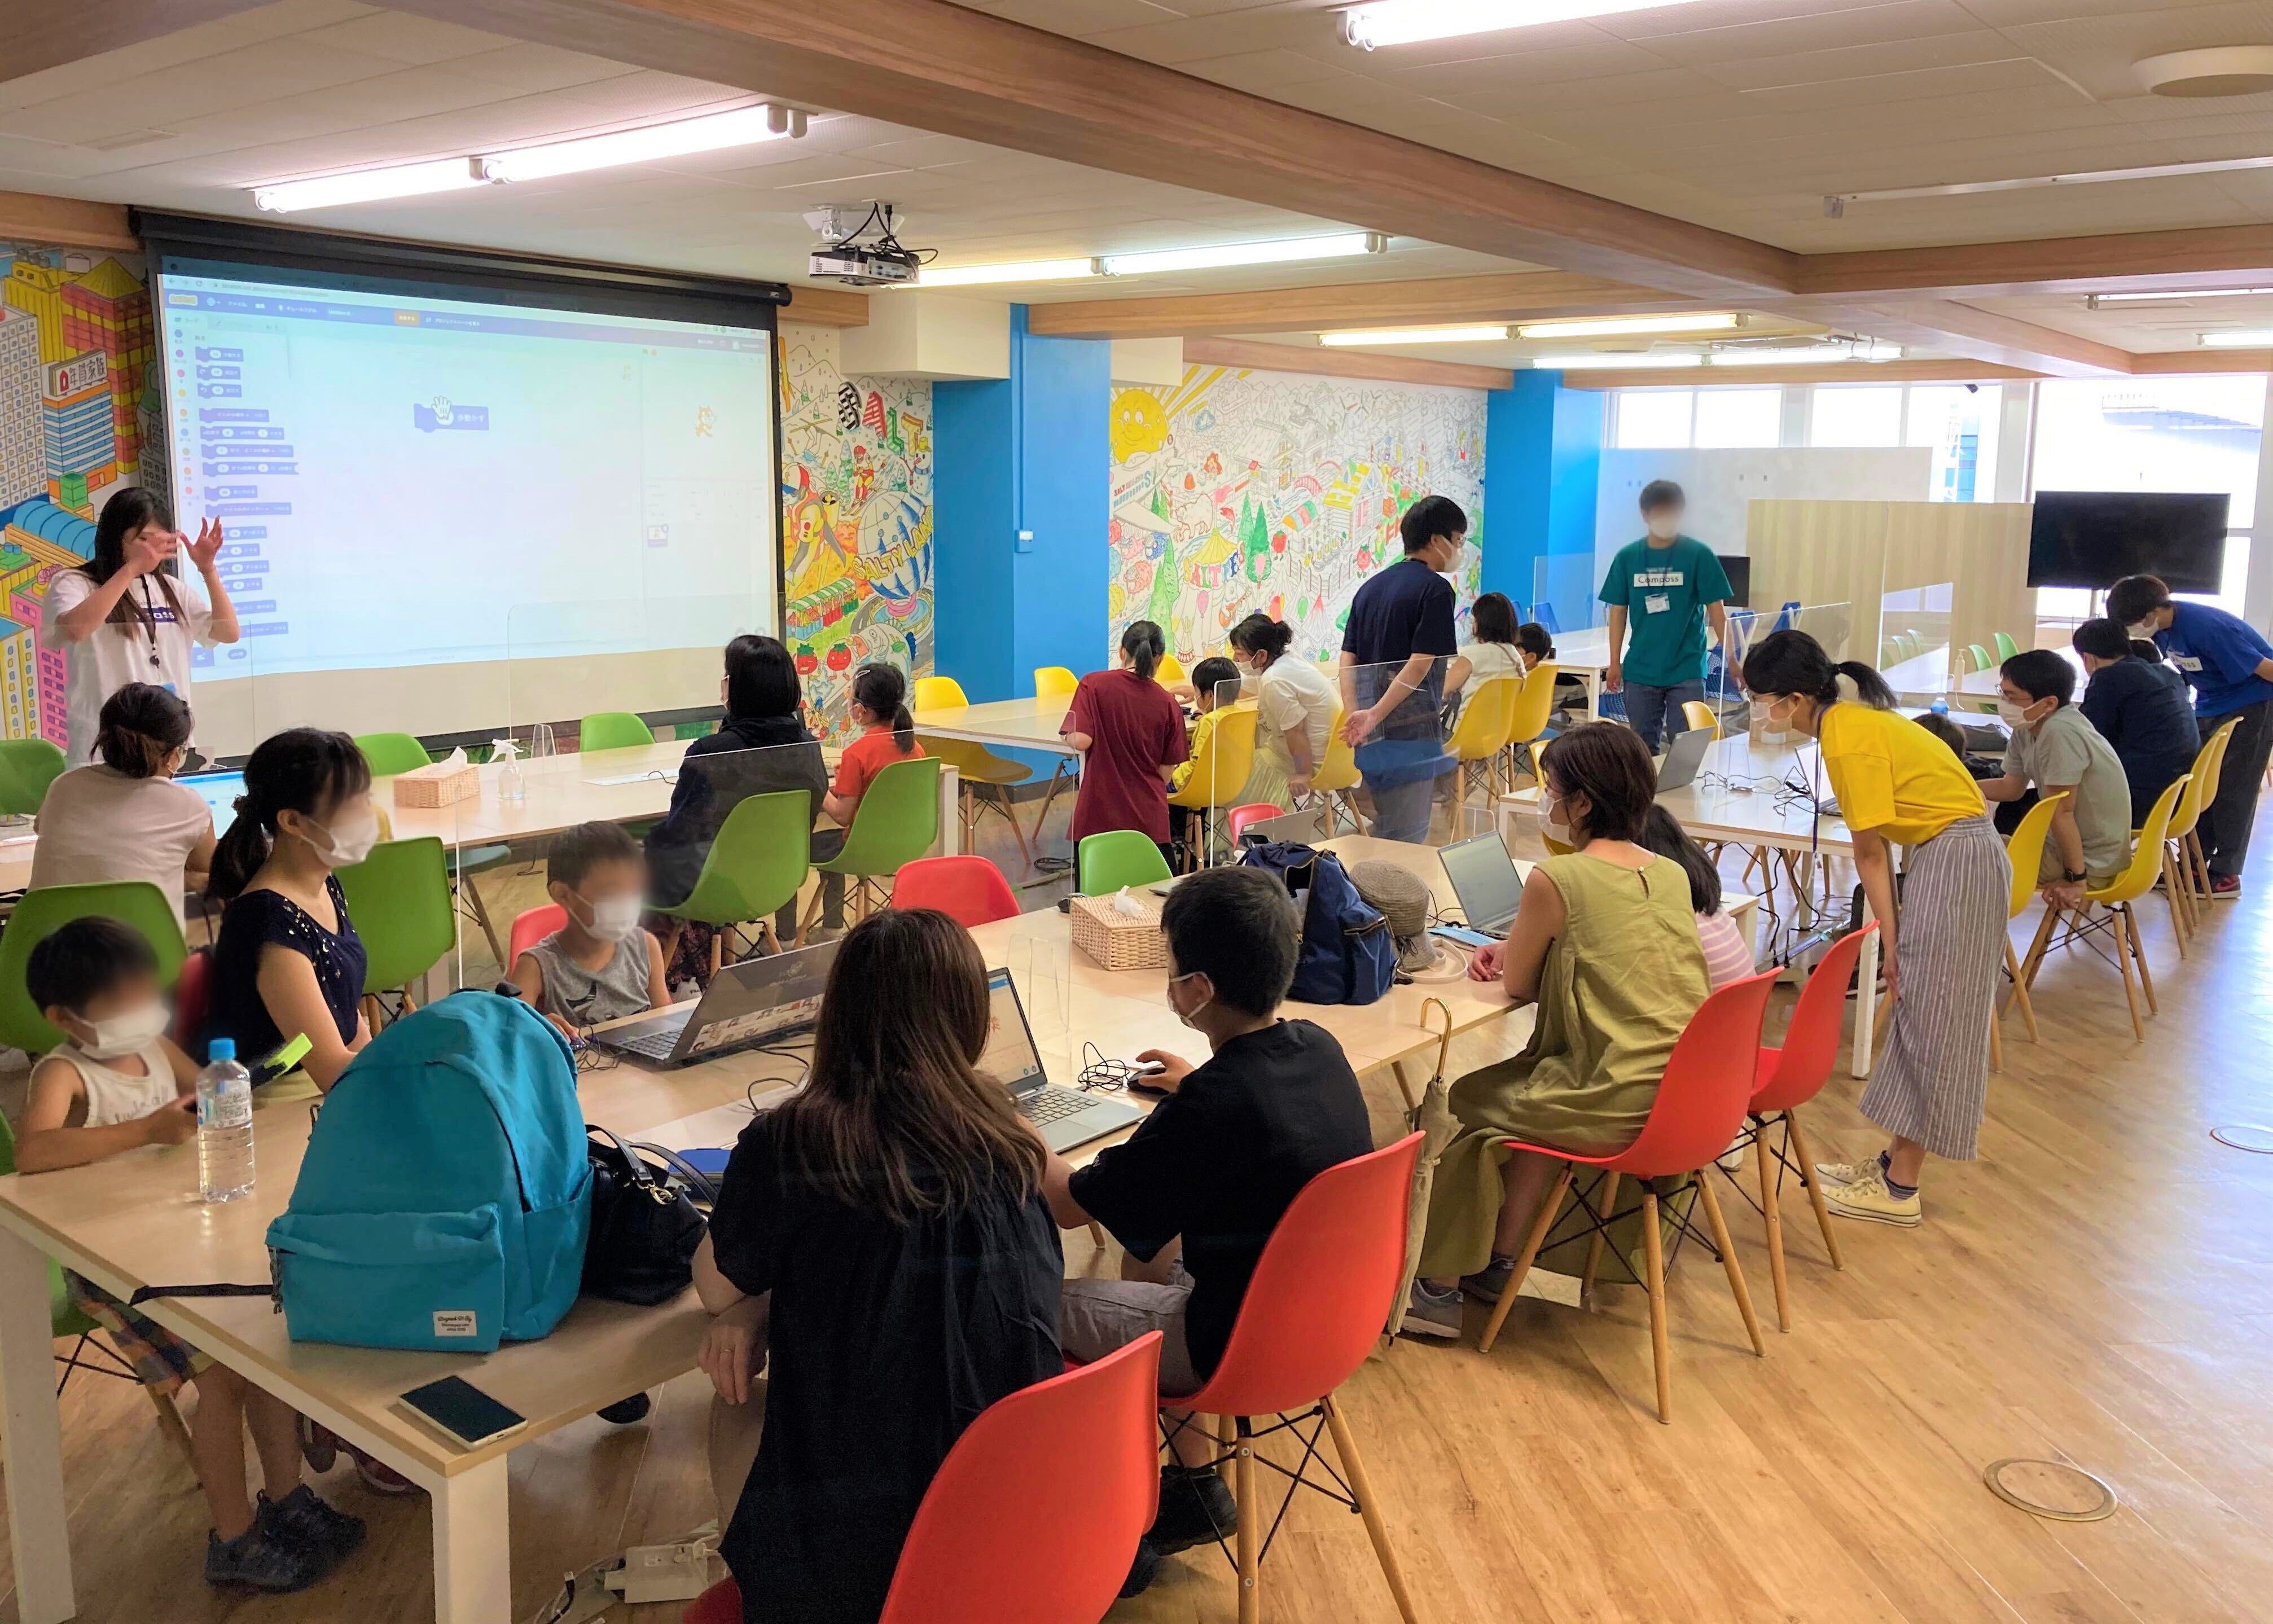 SALTPARKにて小学生向けの親子プログラミング体験会が開催されました